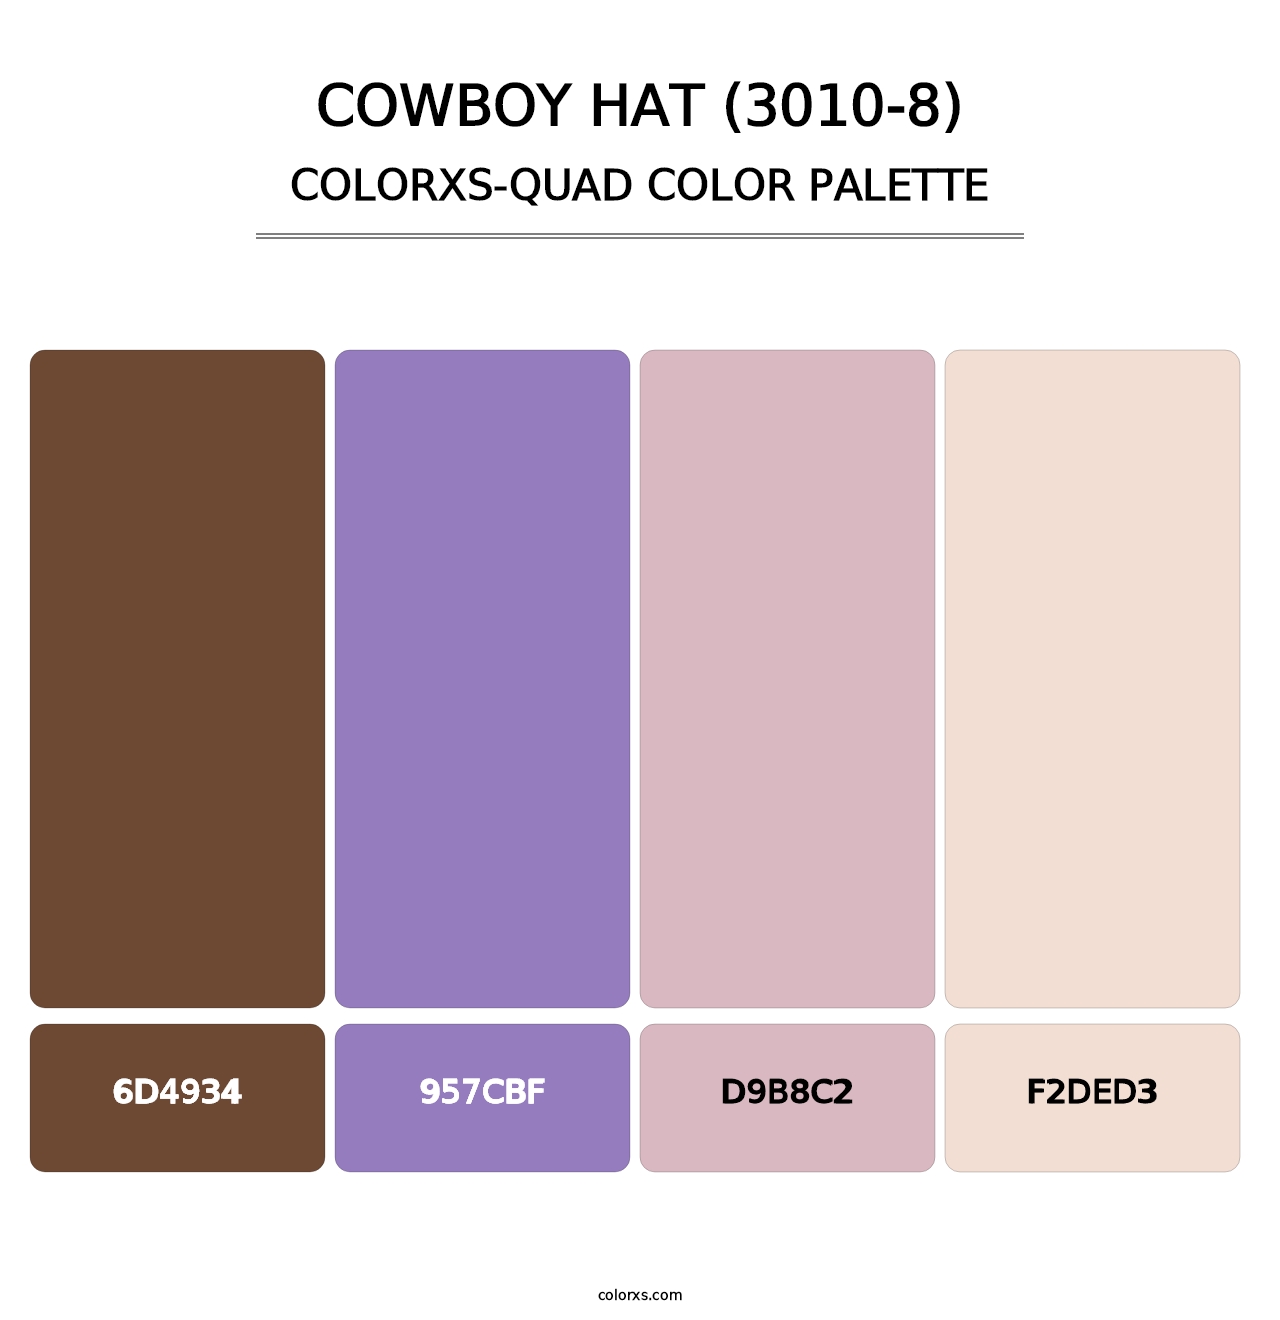 Cowboy Hat (3010-8) - Colorxs Quad Palette